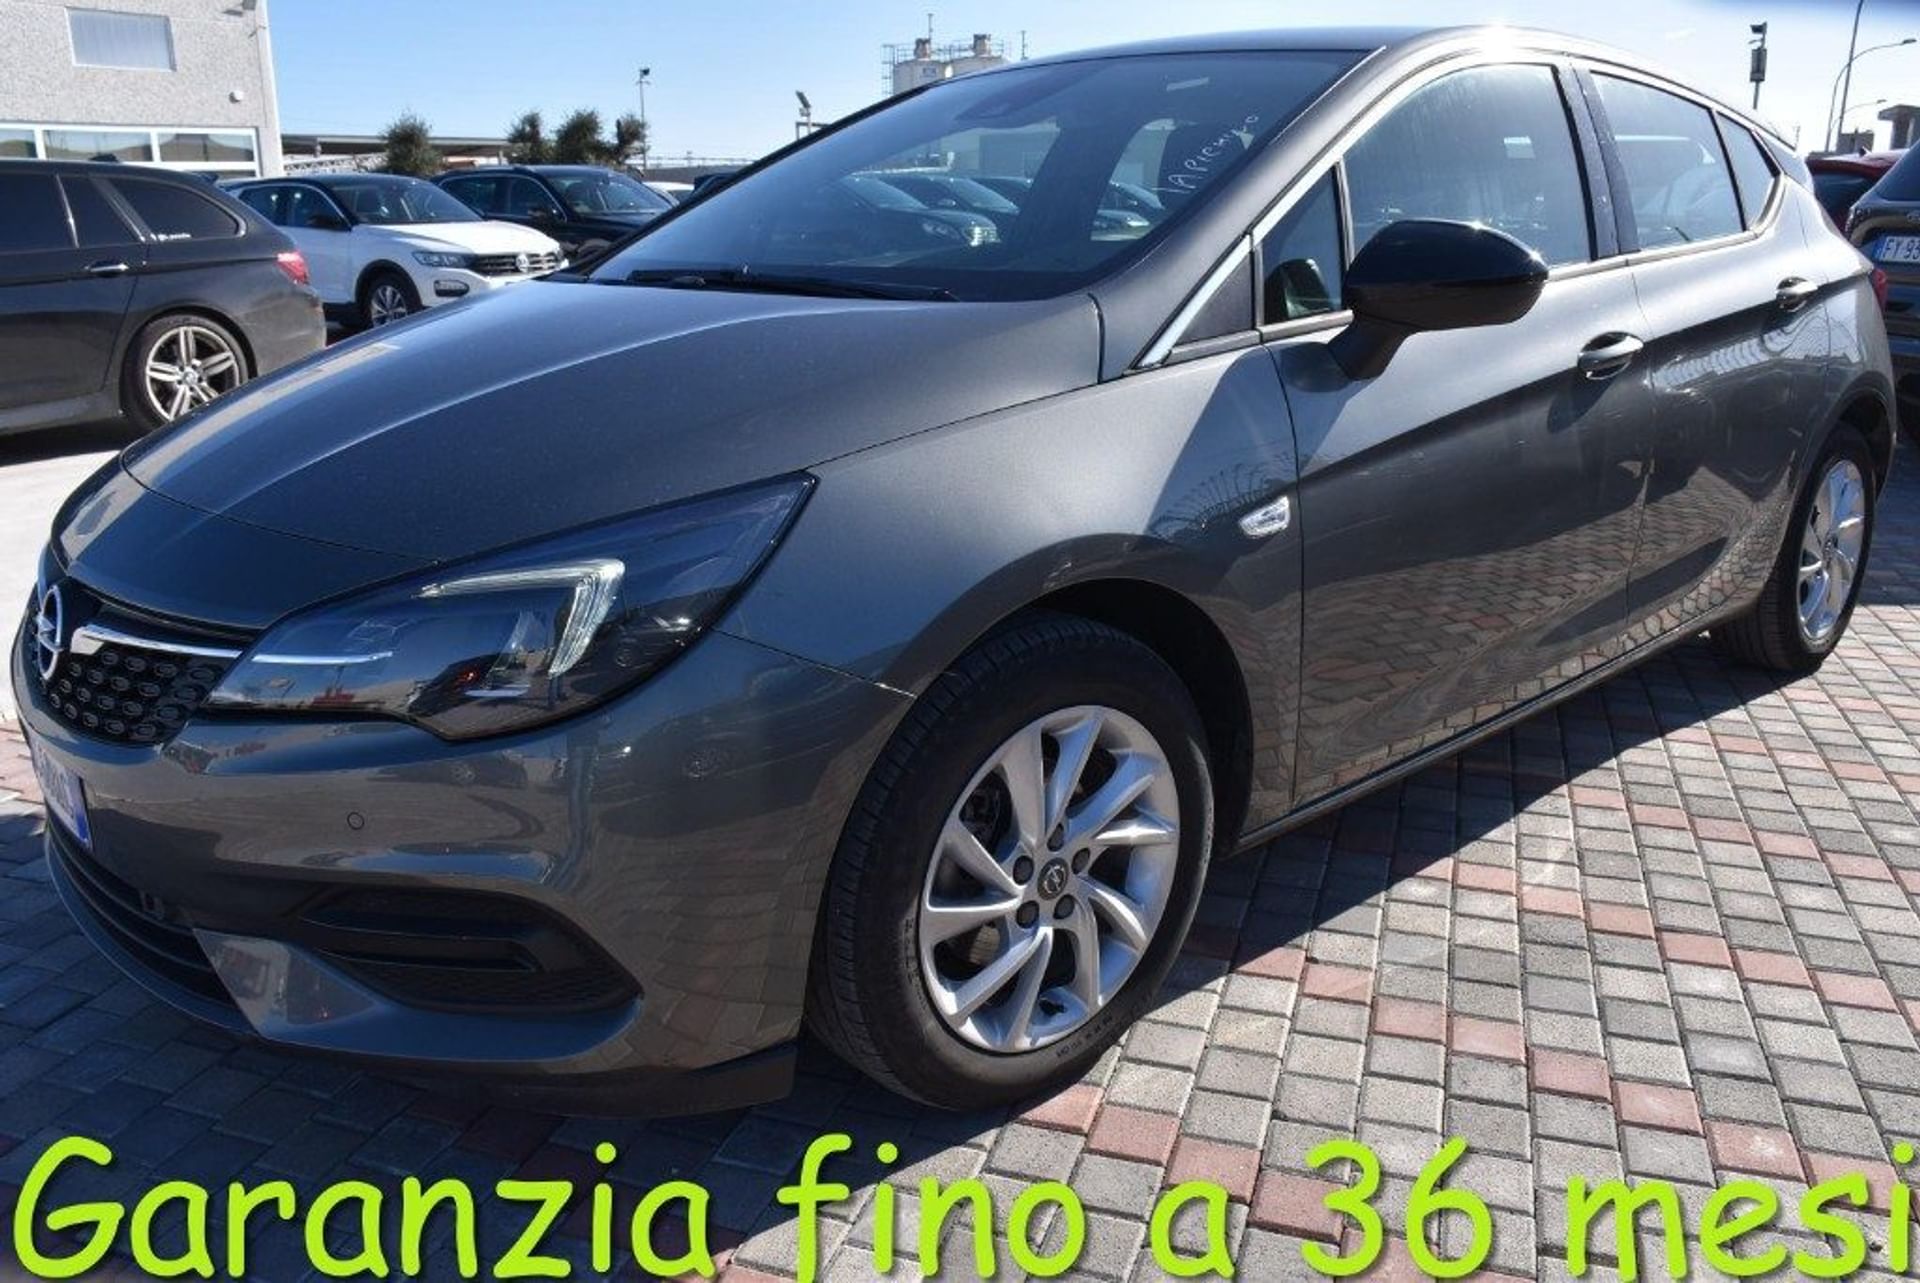 Opel Astra 1.5 CDTI 122 CV